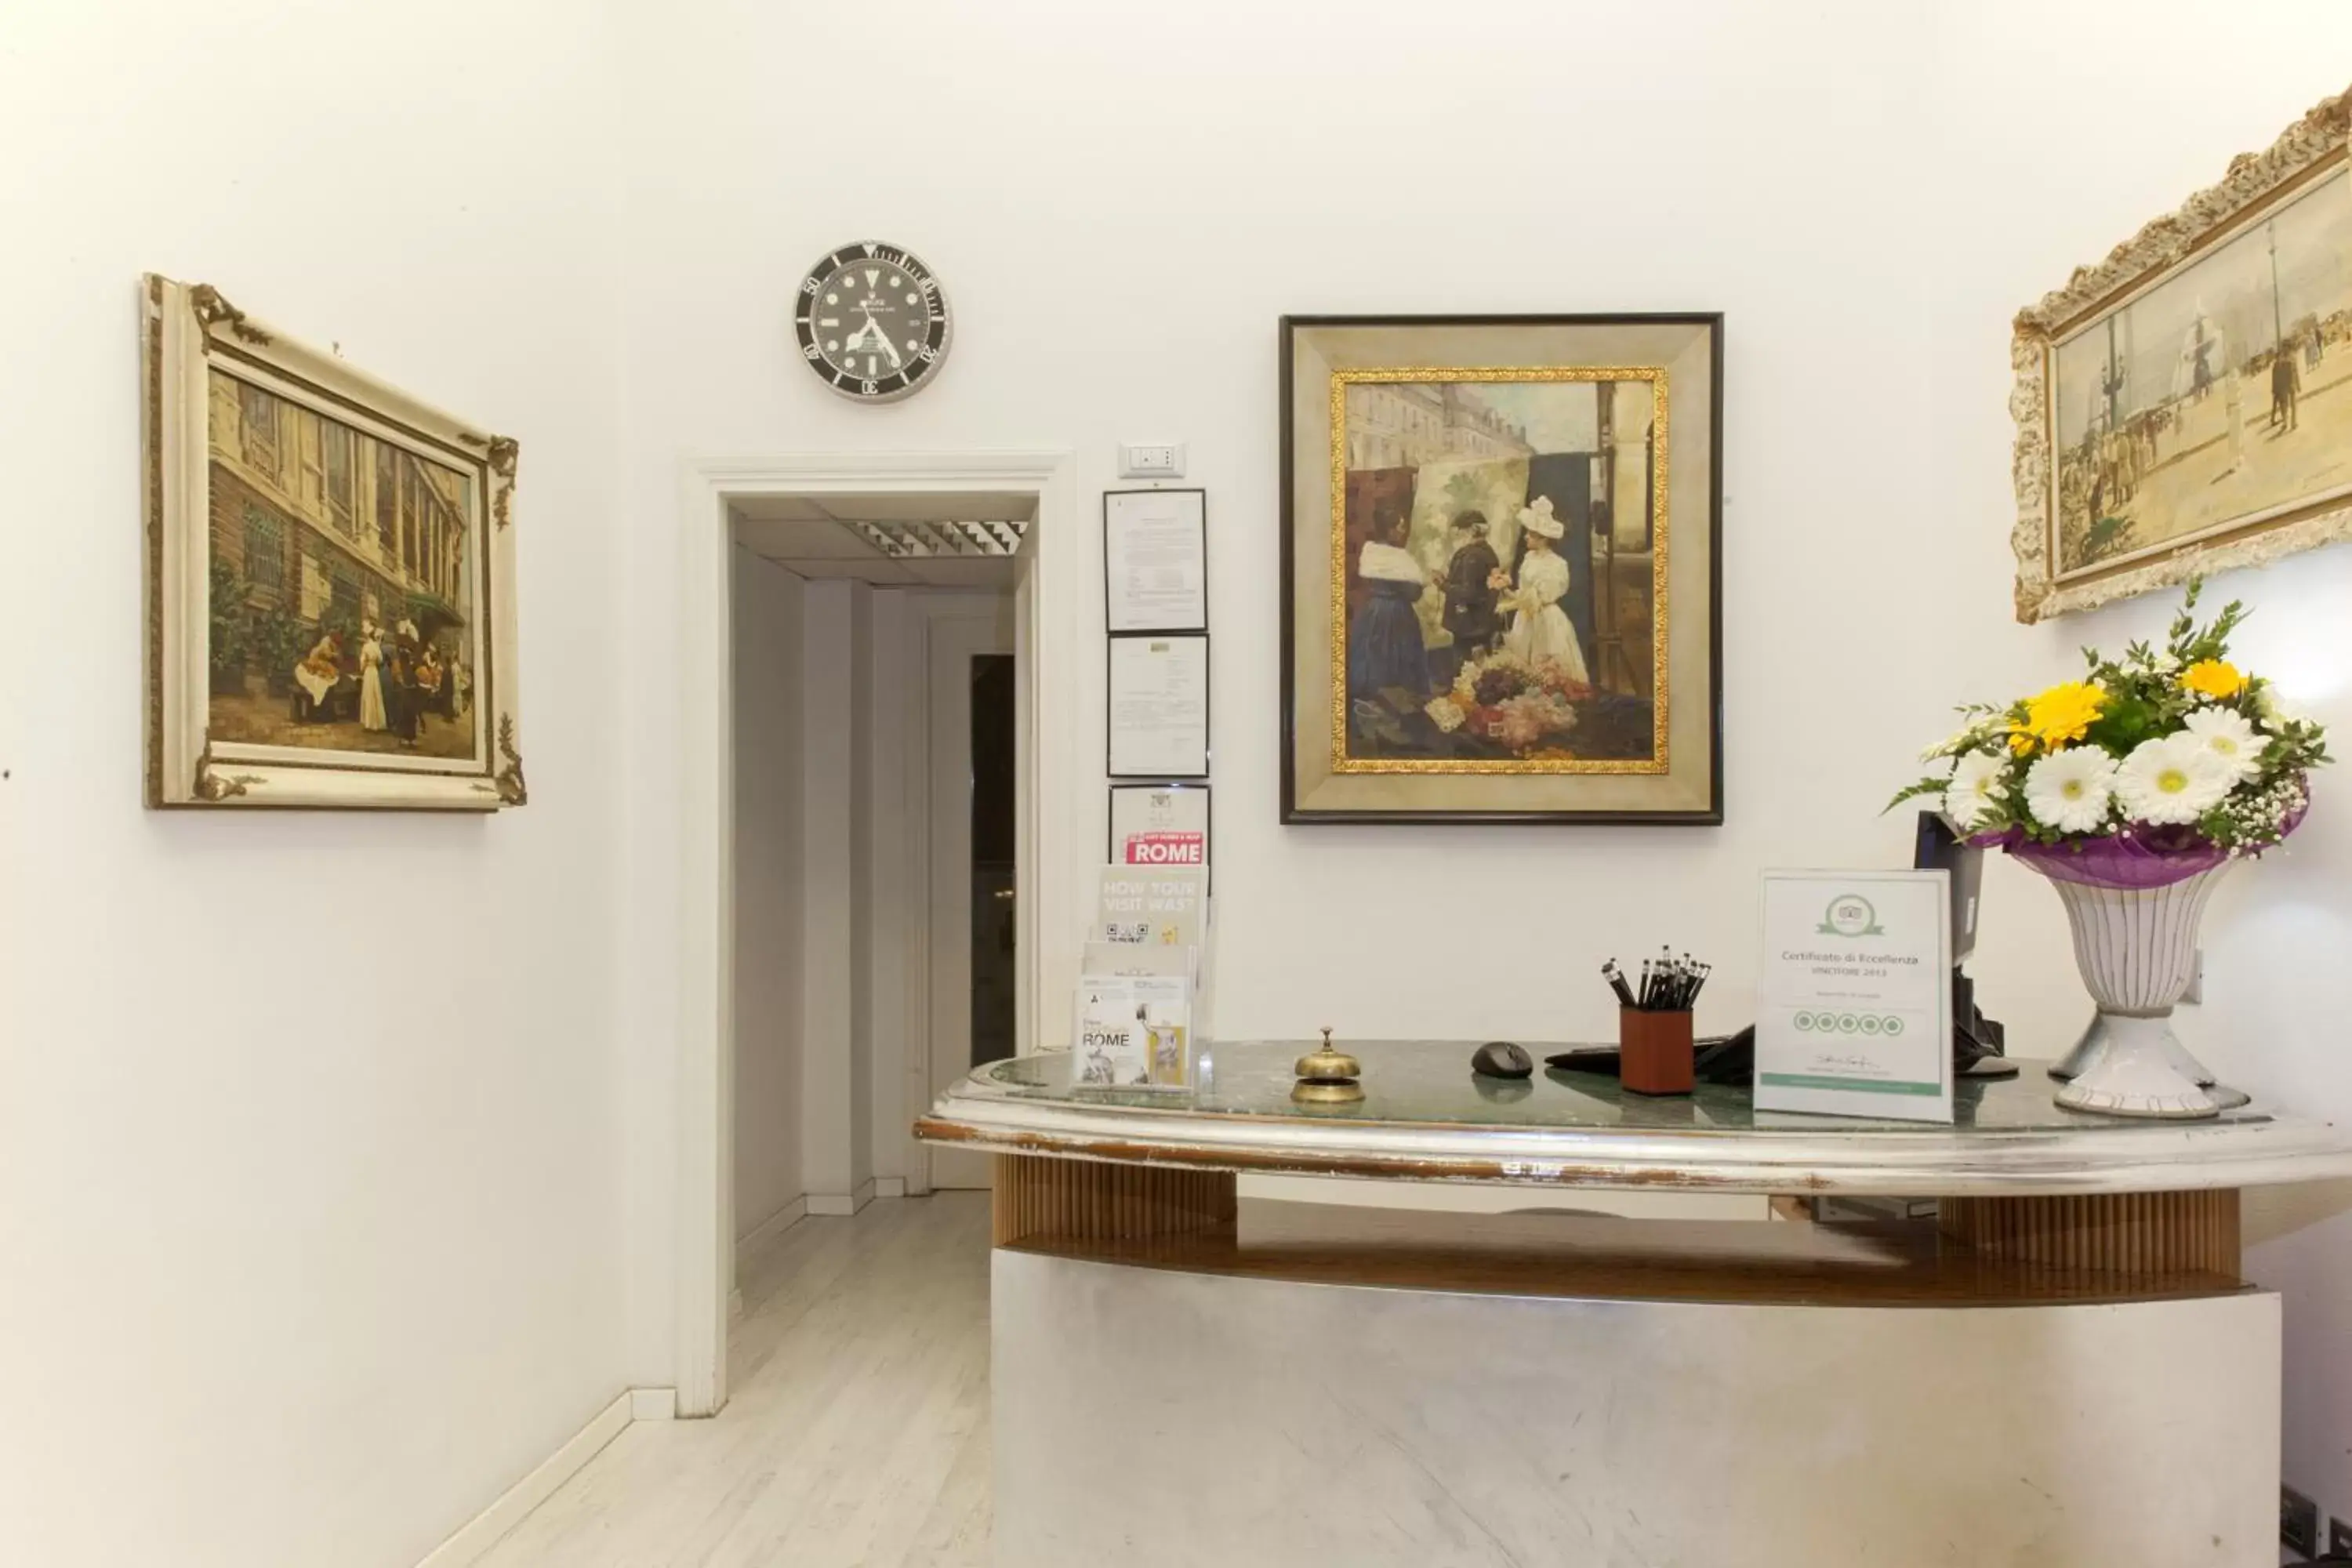 Lobby or reception in Villa Pirandello